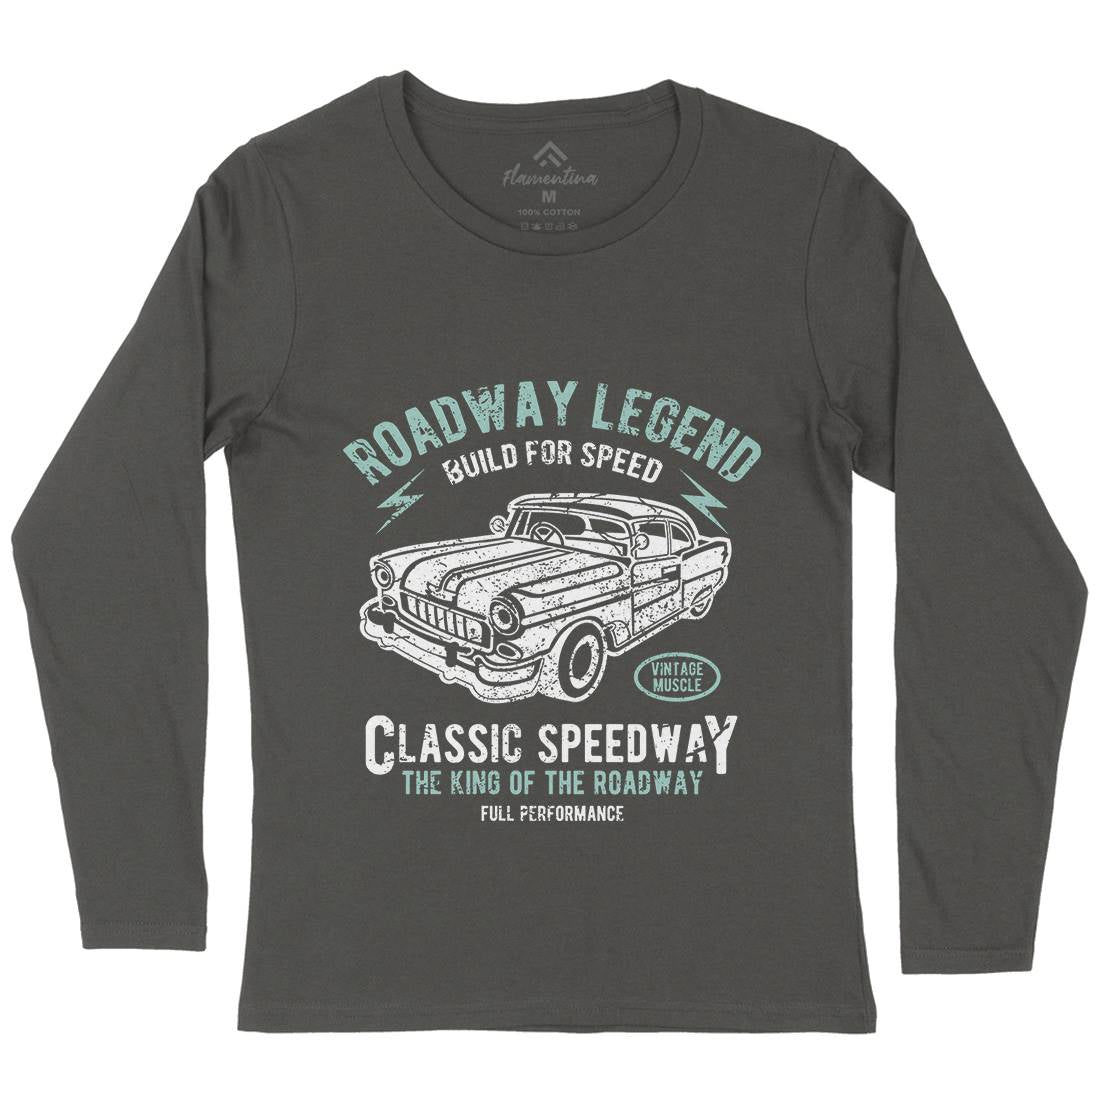 Roadway Legend Womens Long Sleeve T-Shirt Cars A124